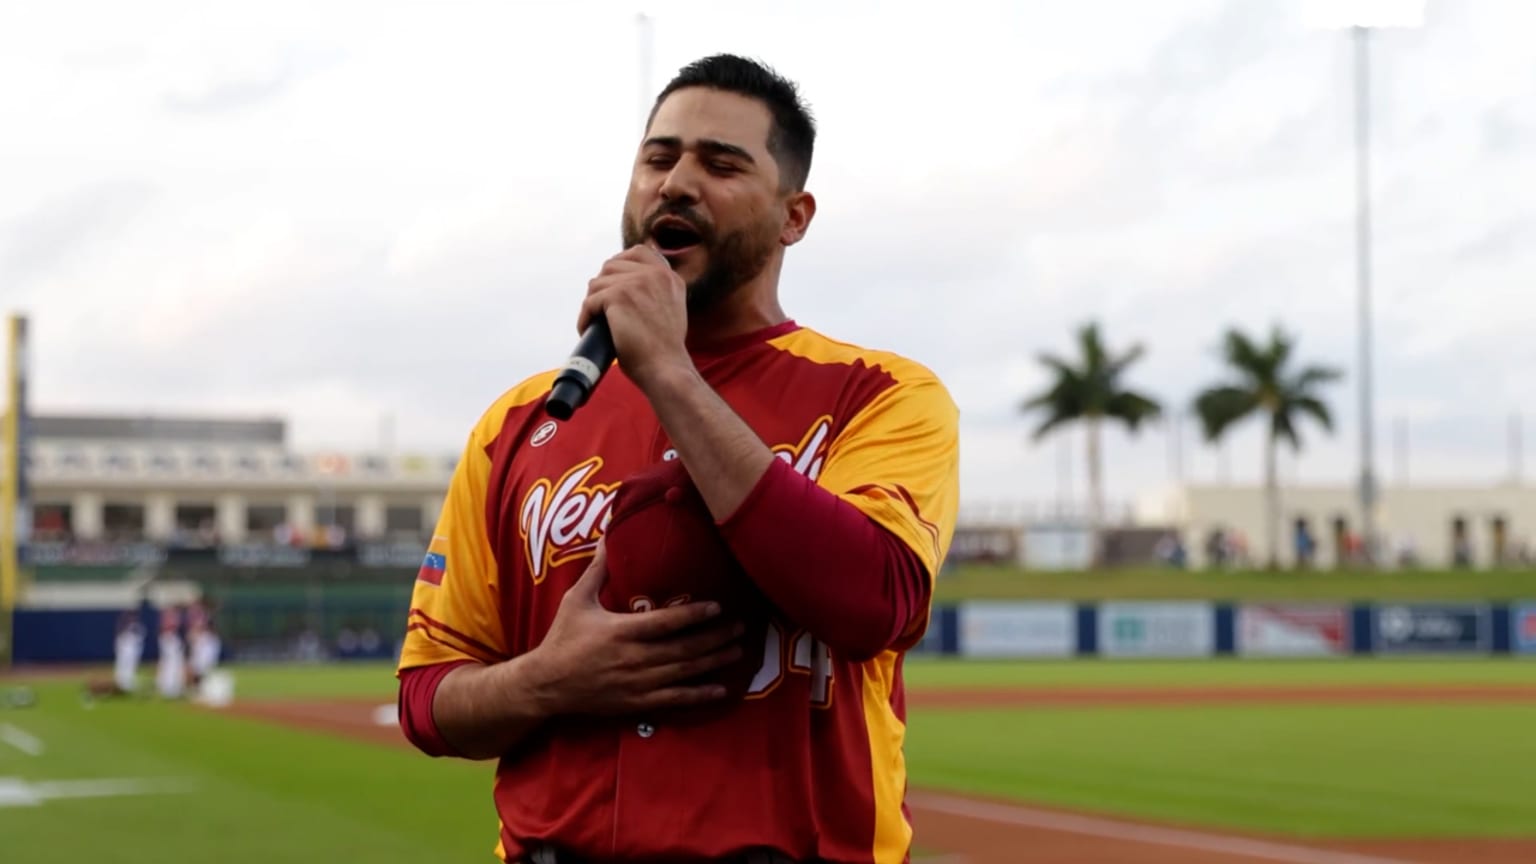 Awesome video shows Rangers pitcher singing Venezuelan anthem at WBC